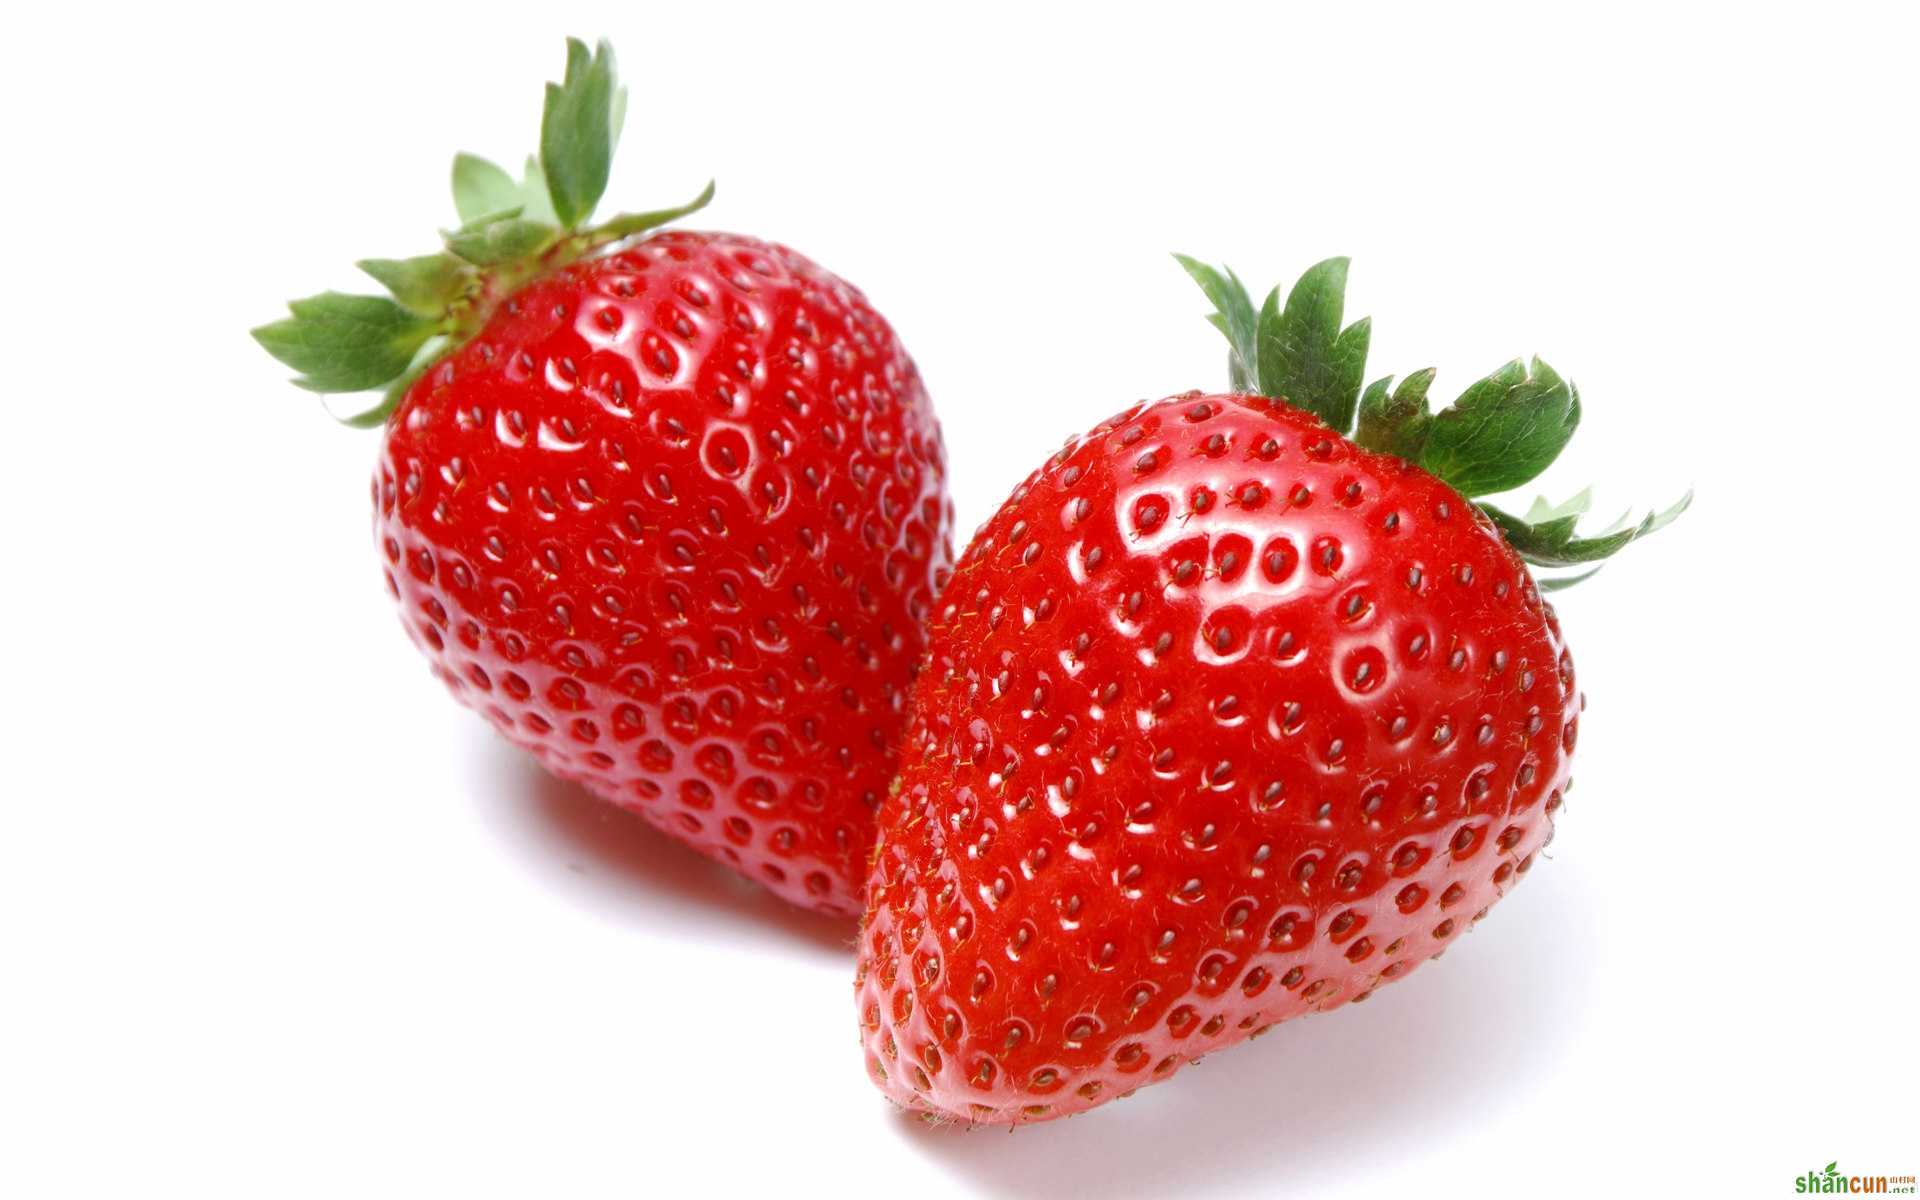 大棚草莓出现大量畸形果的原因 山村